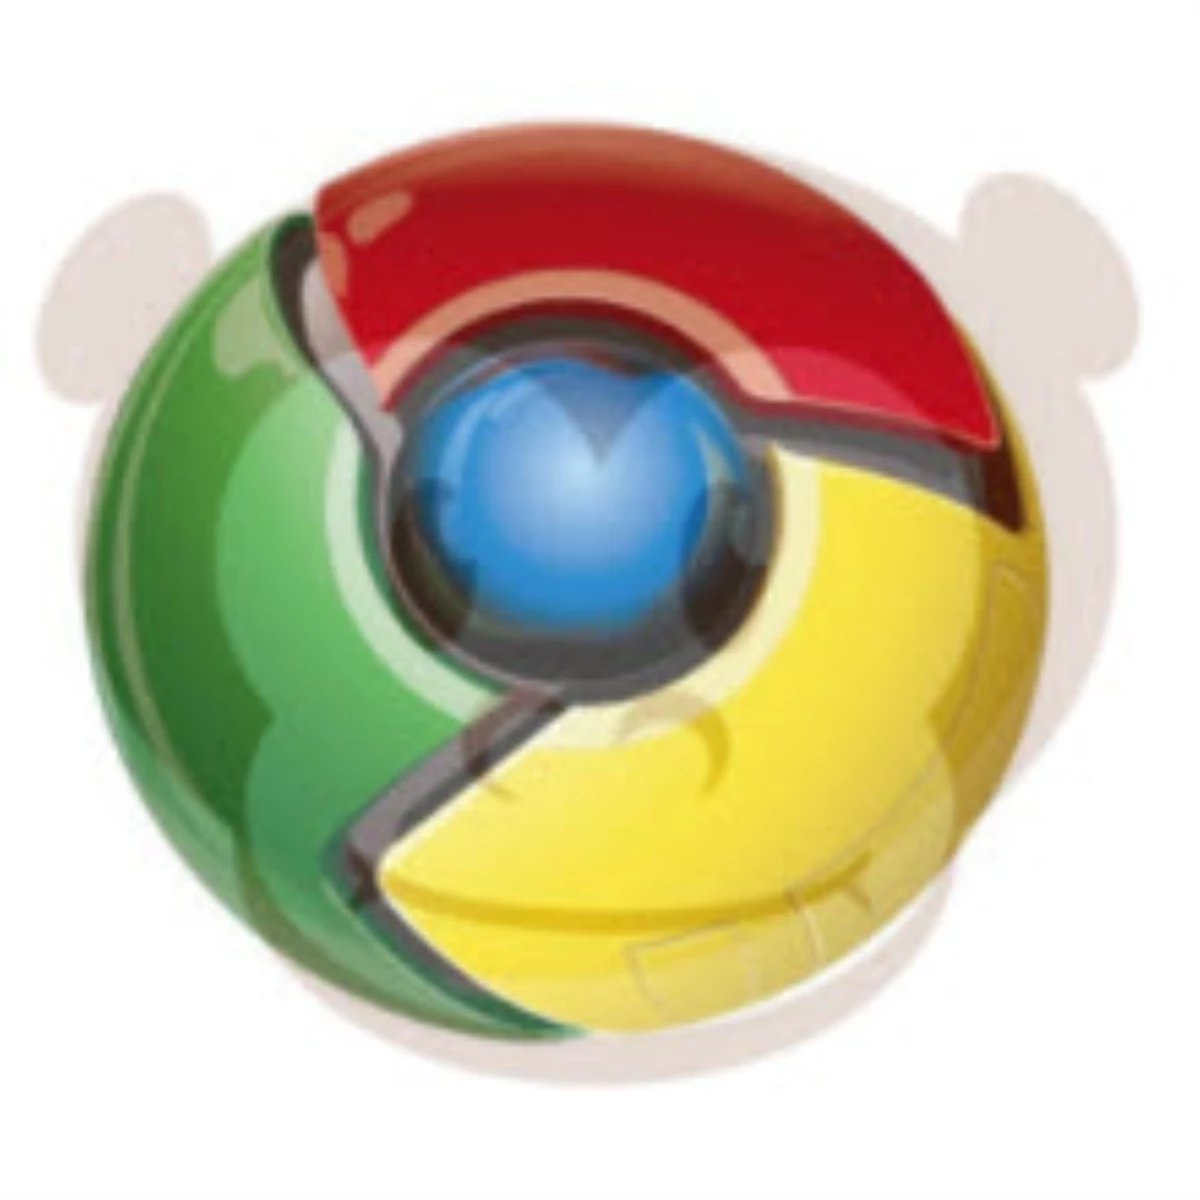 Chrome İçin Firefox Scriptleri! 4 Tane...